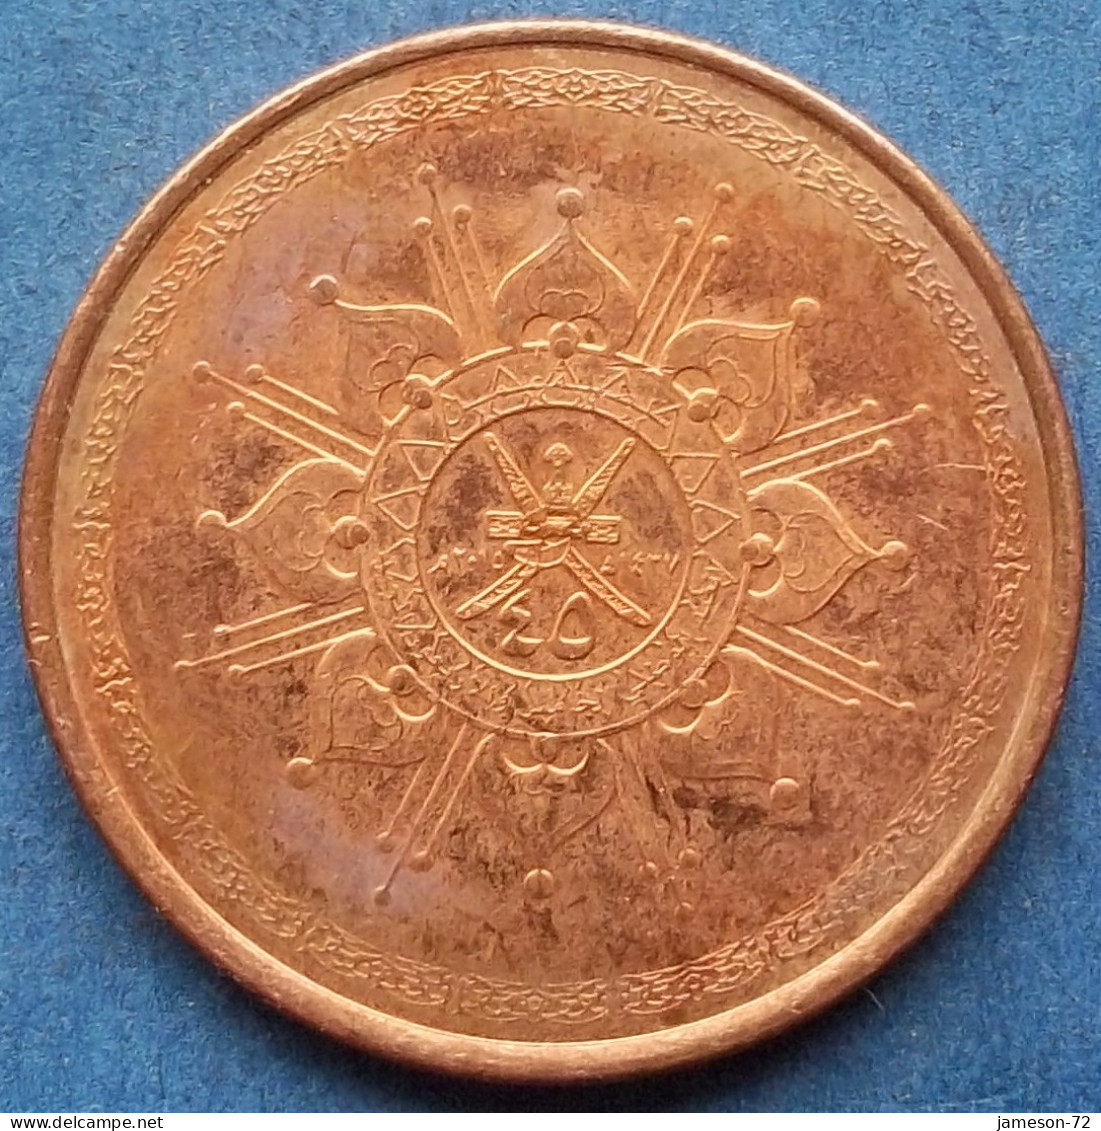 OMAN - 10 Baisa AH1437 2015AD KM# 194 Sultan Quabus Bin Sa'id Reform Coinage (1972) - Edelweiss Coins - Omán